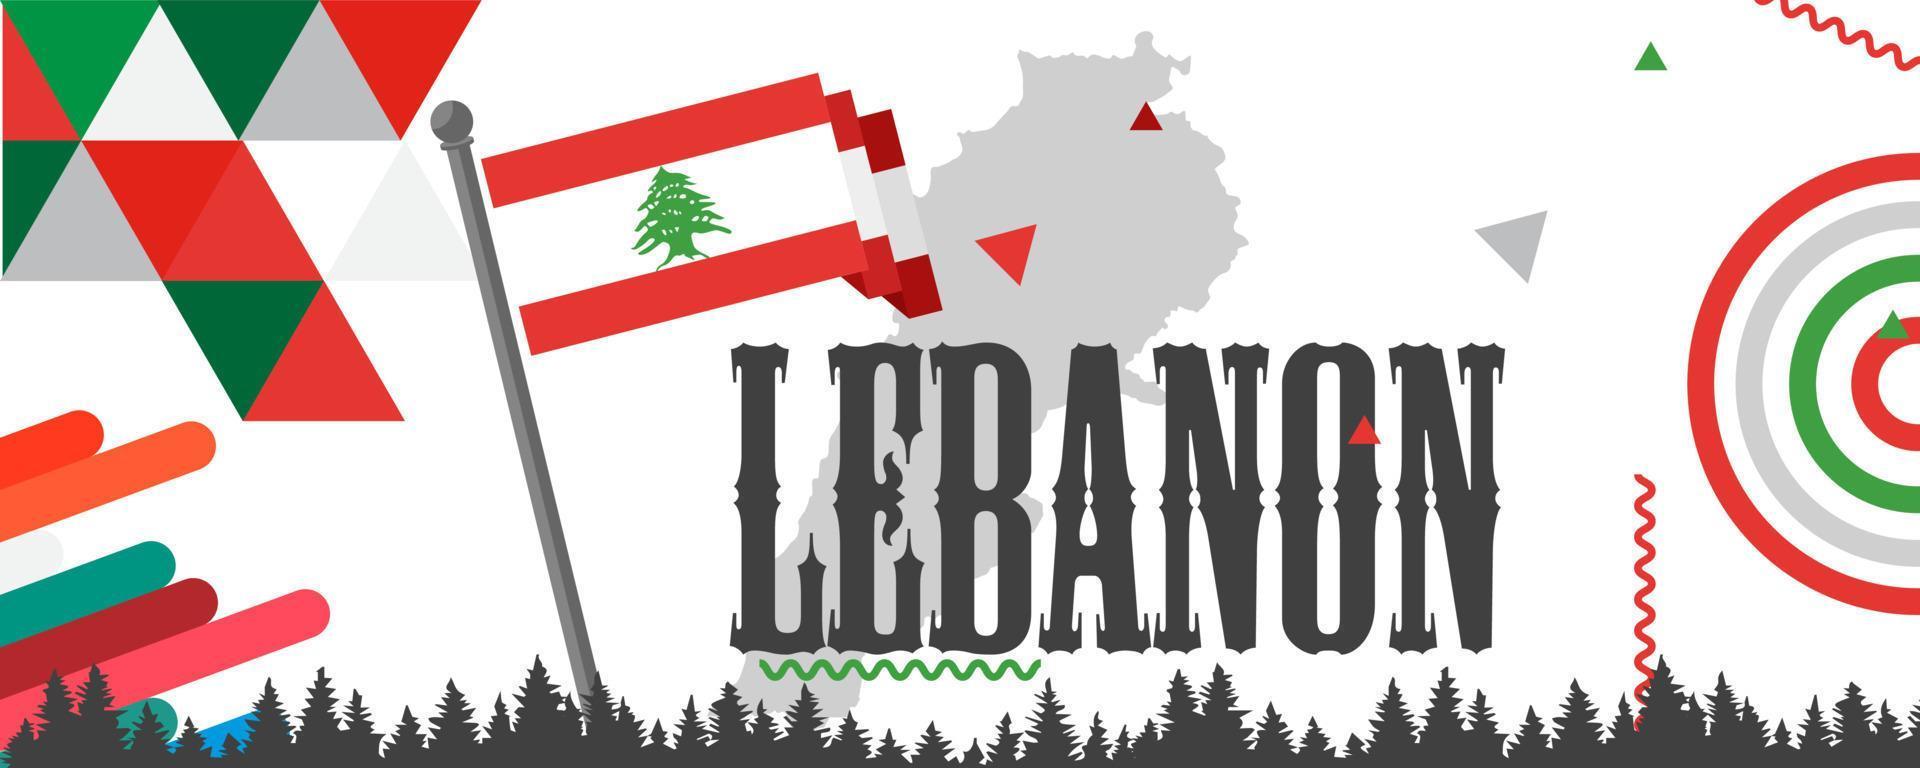 Libanon vlag en kaart met verheven vuisten. nationaal of onafhankelijkheid dag ontwerp voor Libanees mensen. modern rood groen wit traditioneel abstract achtergrond. Libanon vector illustratie